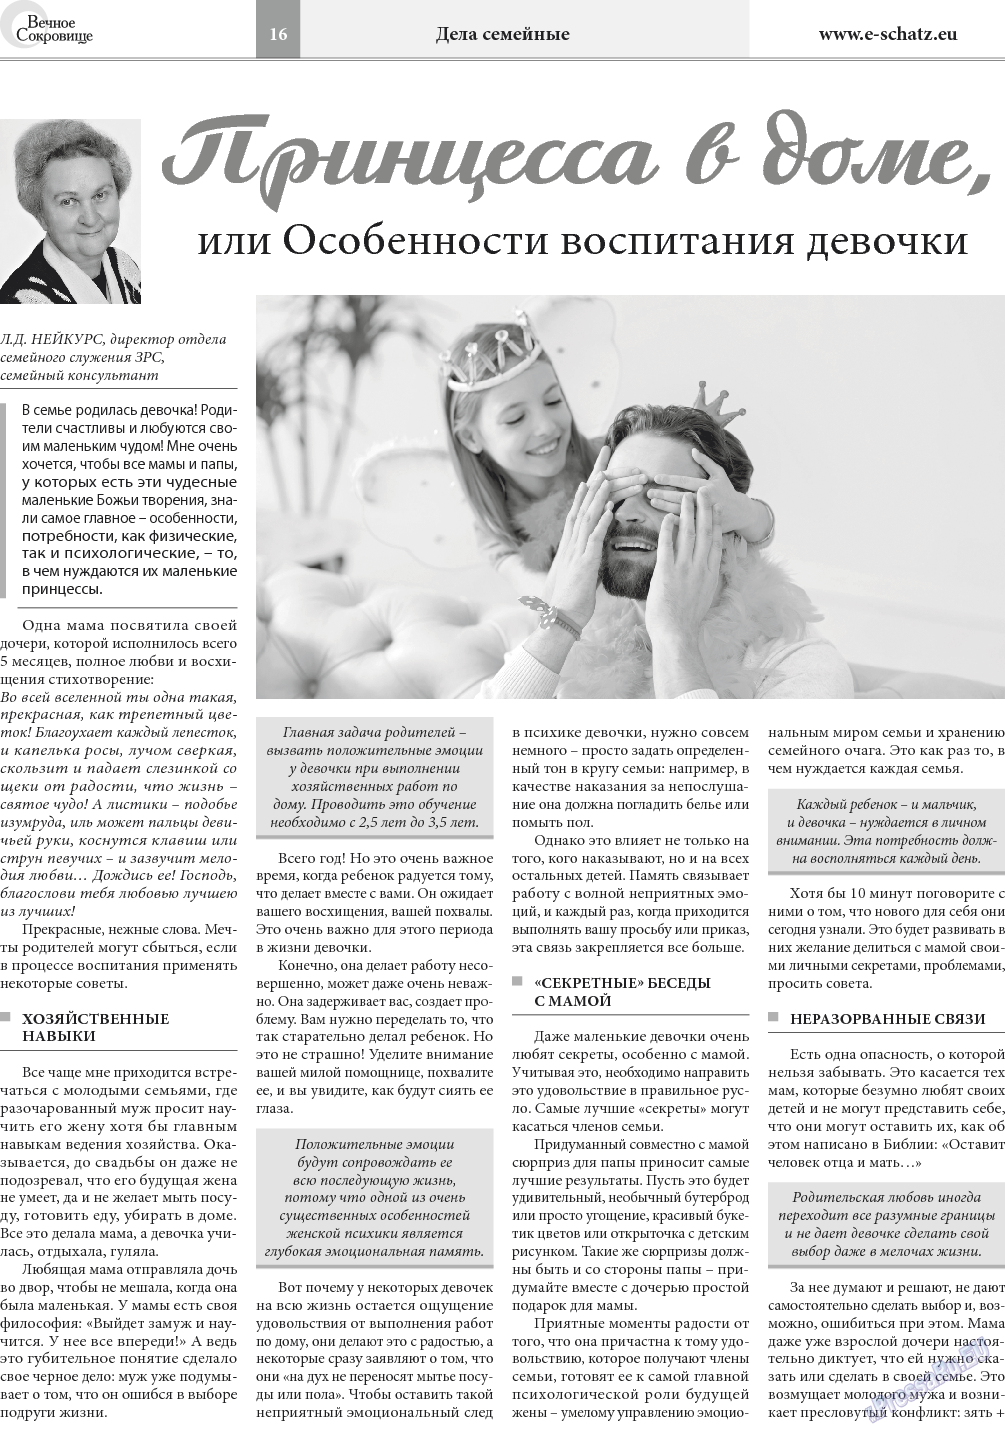 Вечное сокровище (газета). 2018 год, номер 1, стр. 16